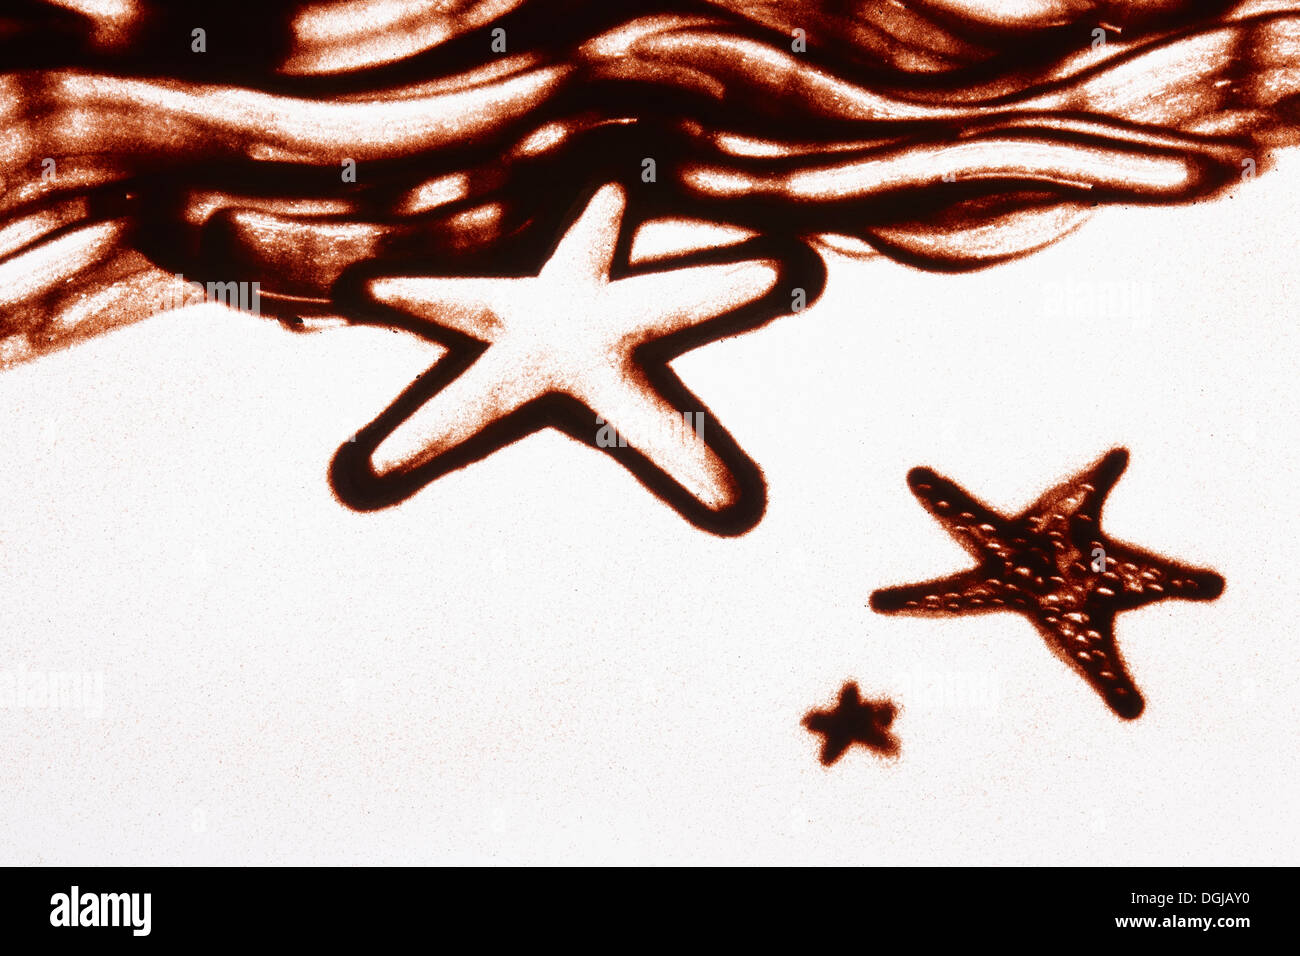 Un dessin sur sable de poissons star sur la plage Banque D'Images